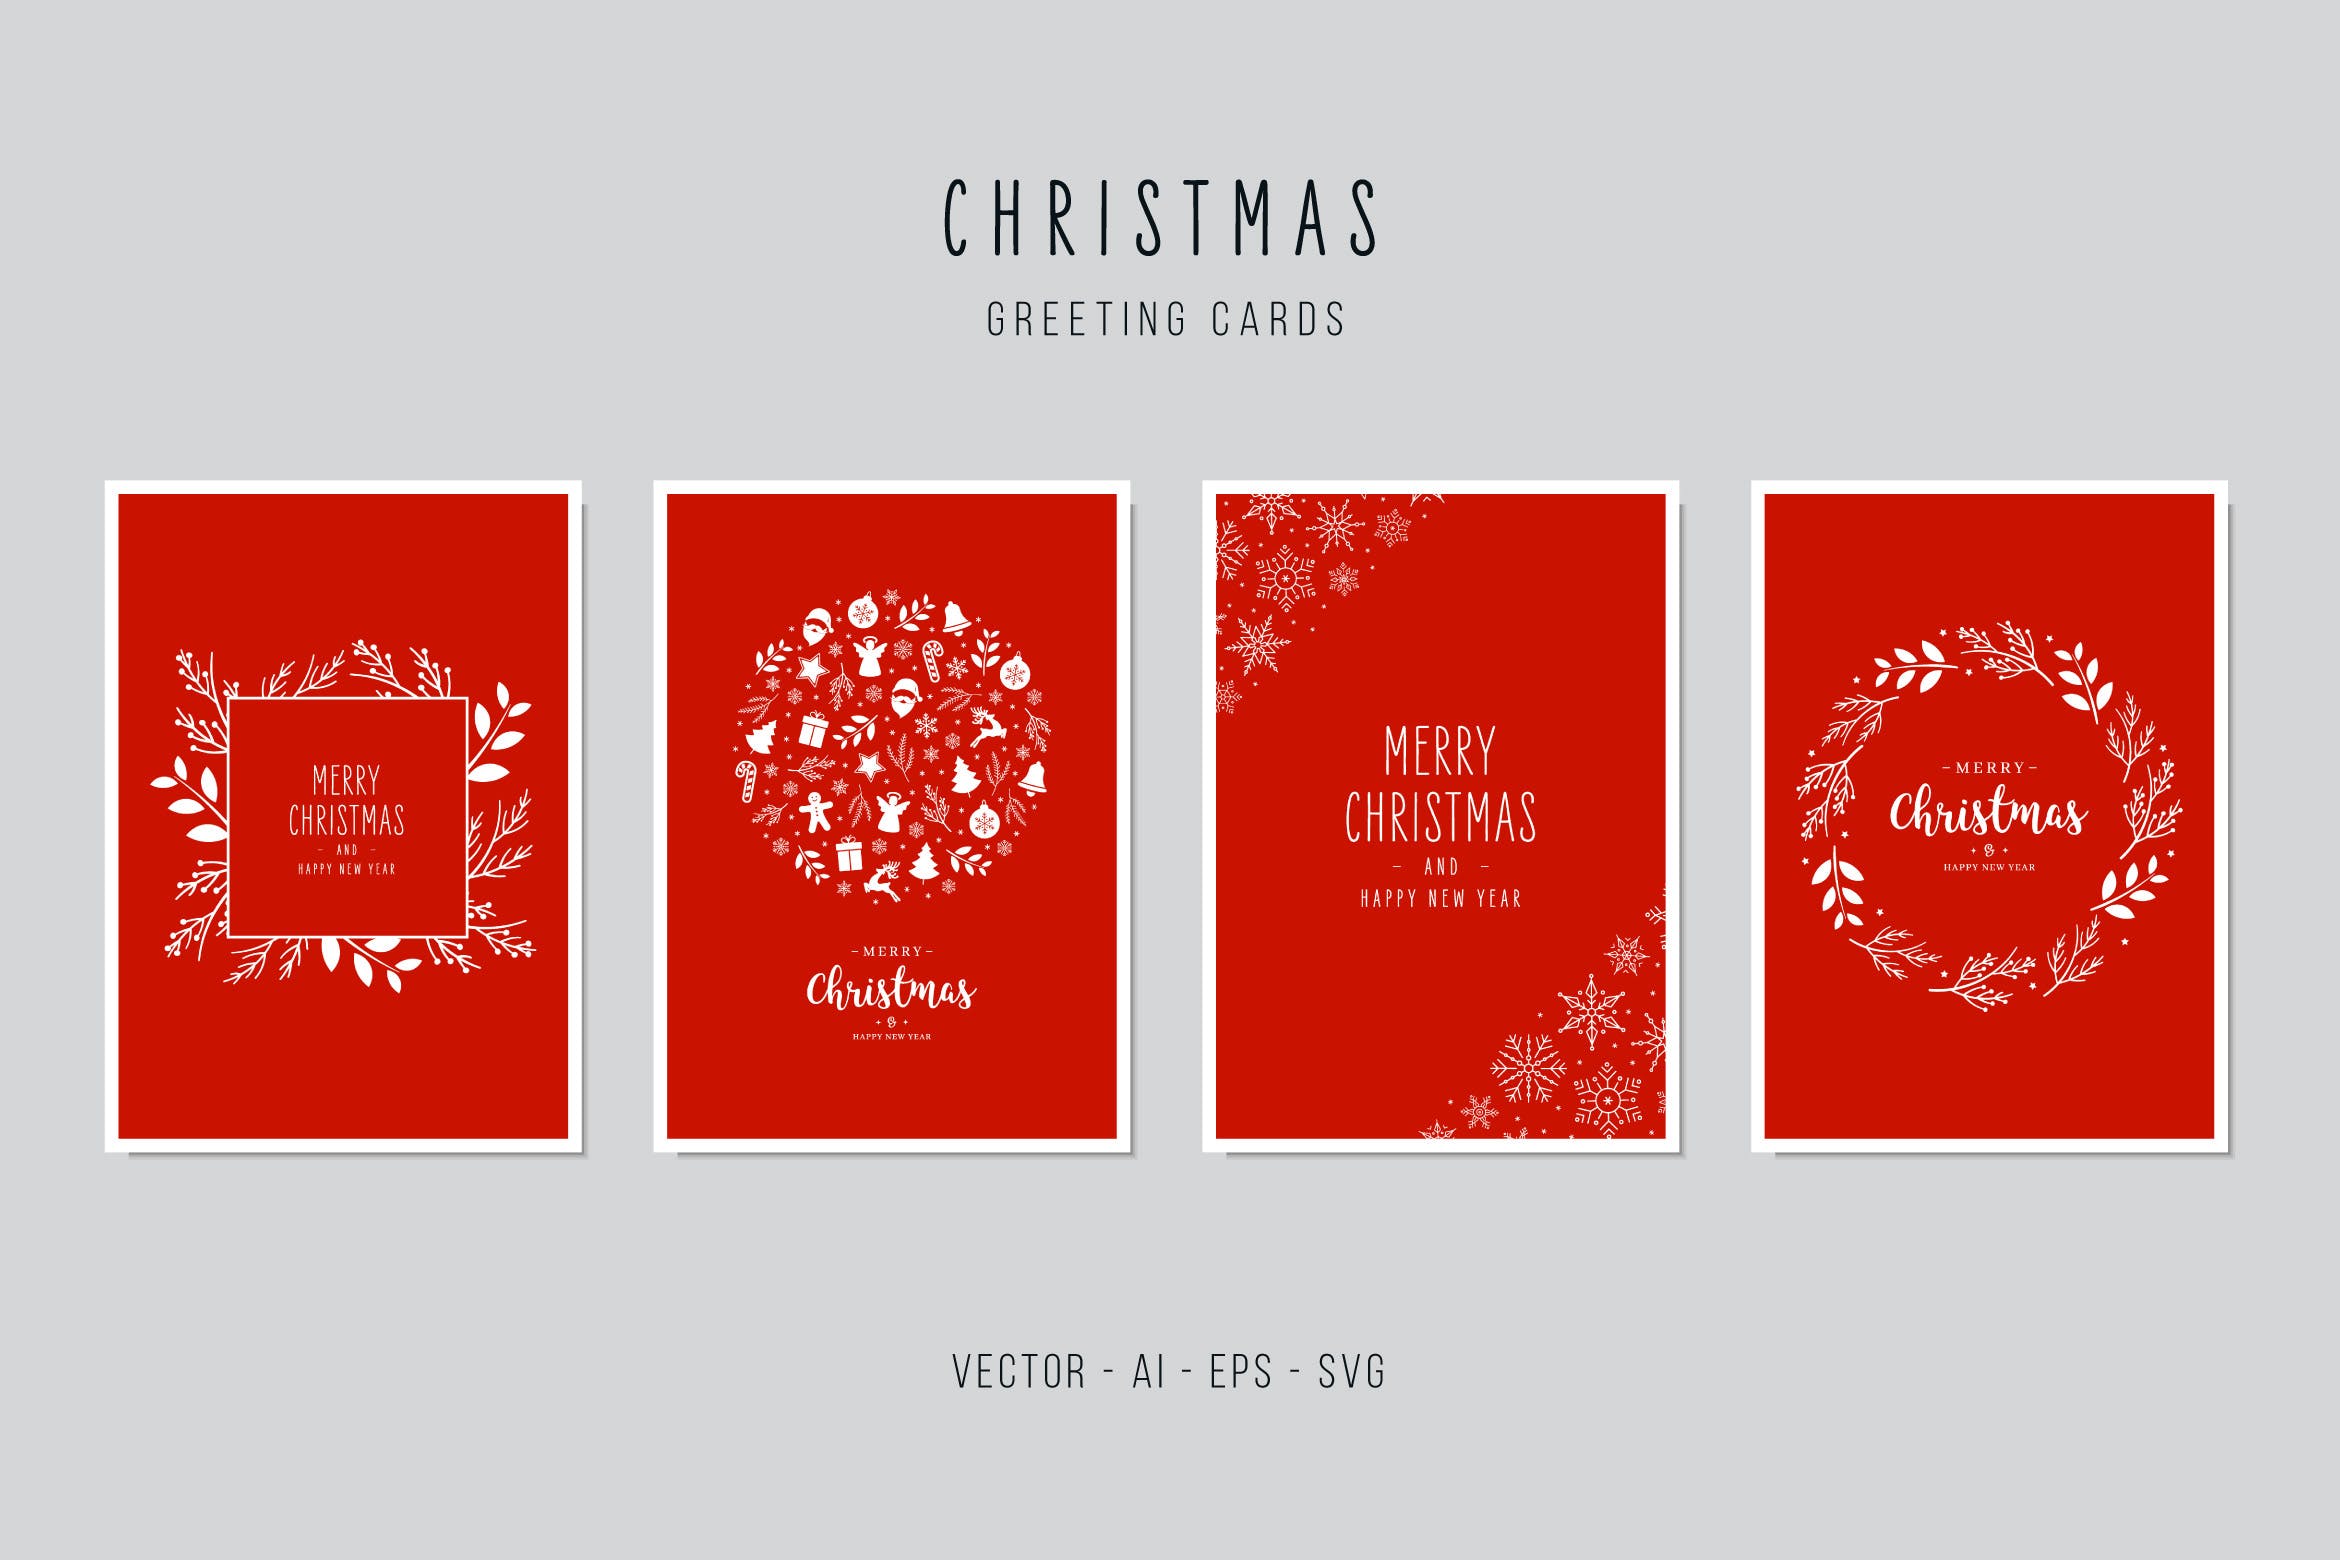 大红色背景圣诞节装饰元素圣诞节贺卡设计模板 Christmas Greeting Vector Card Set插图